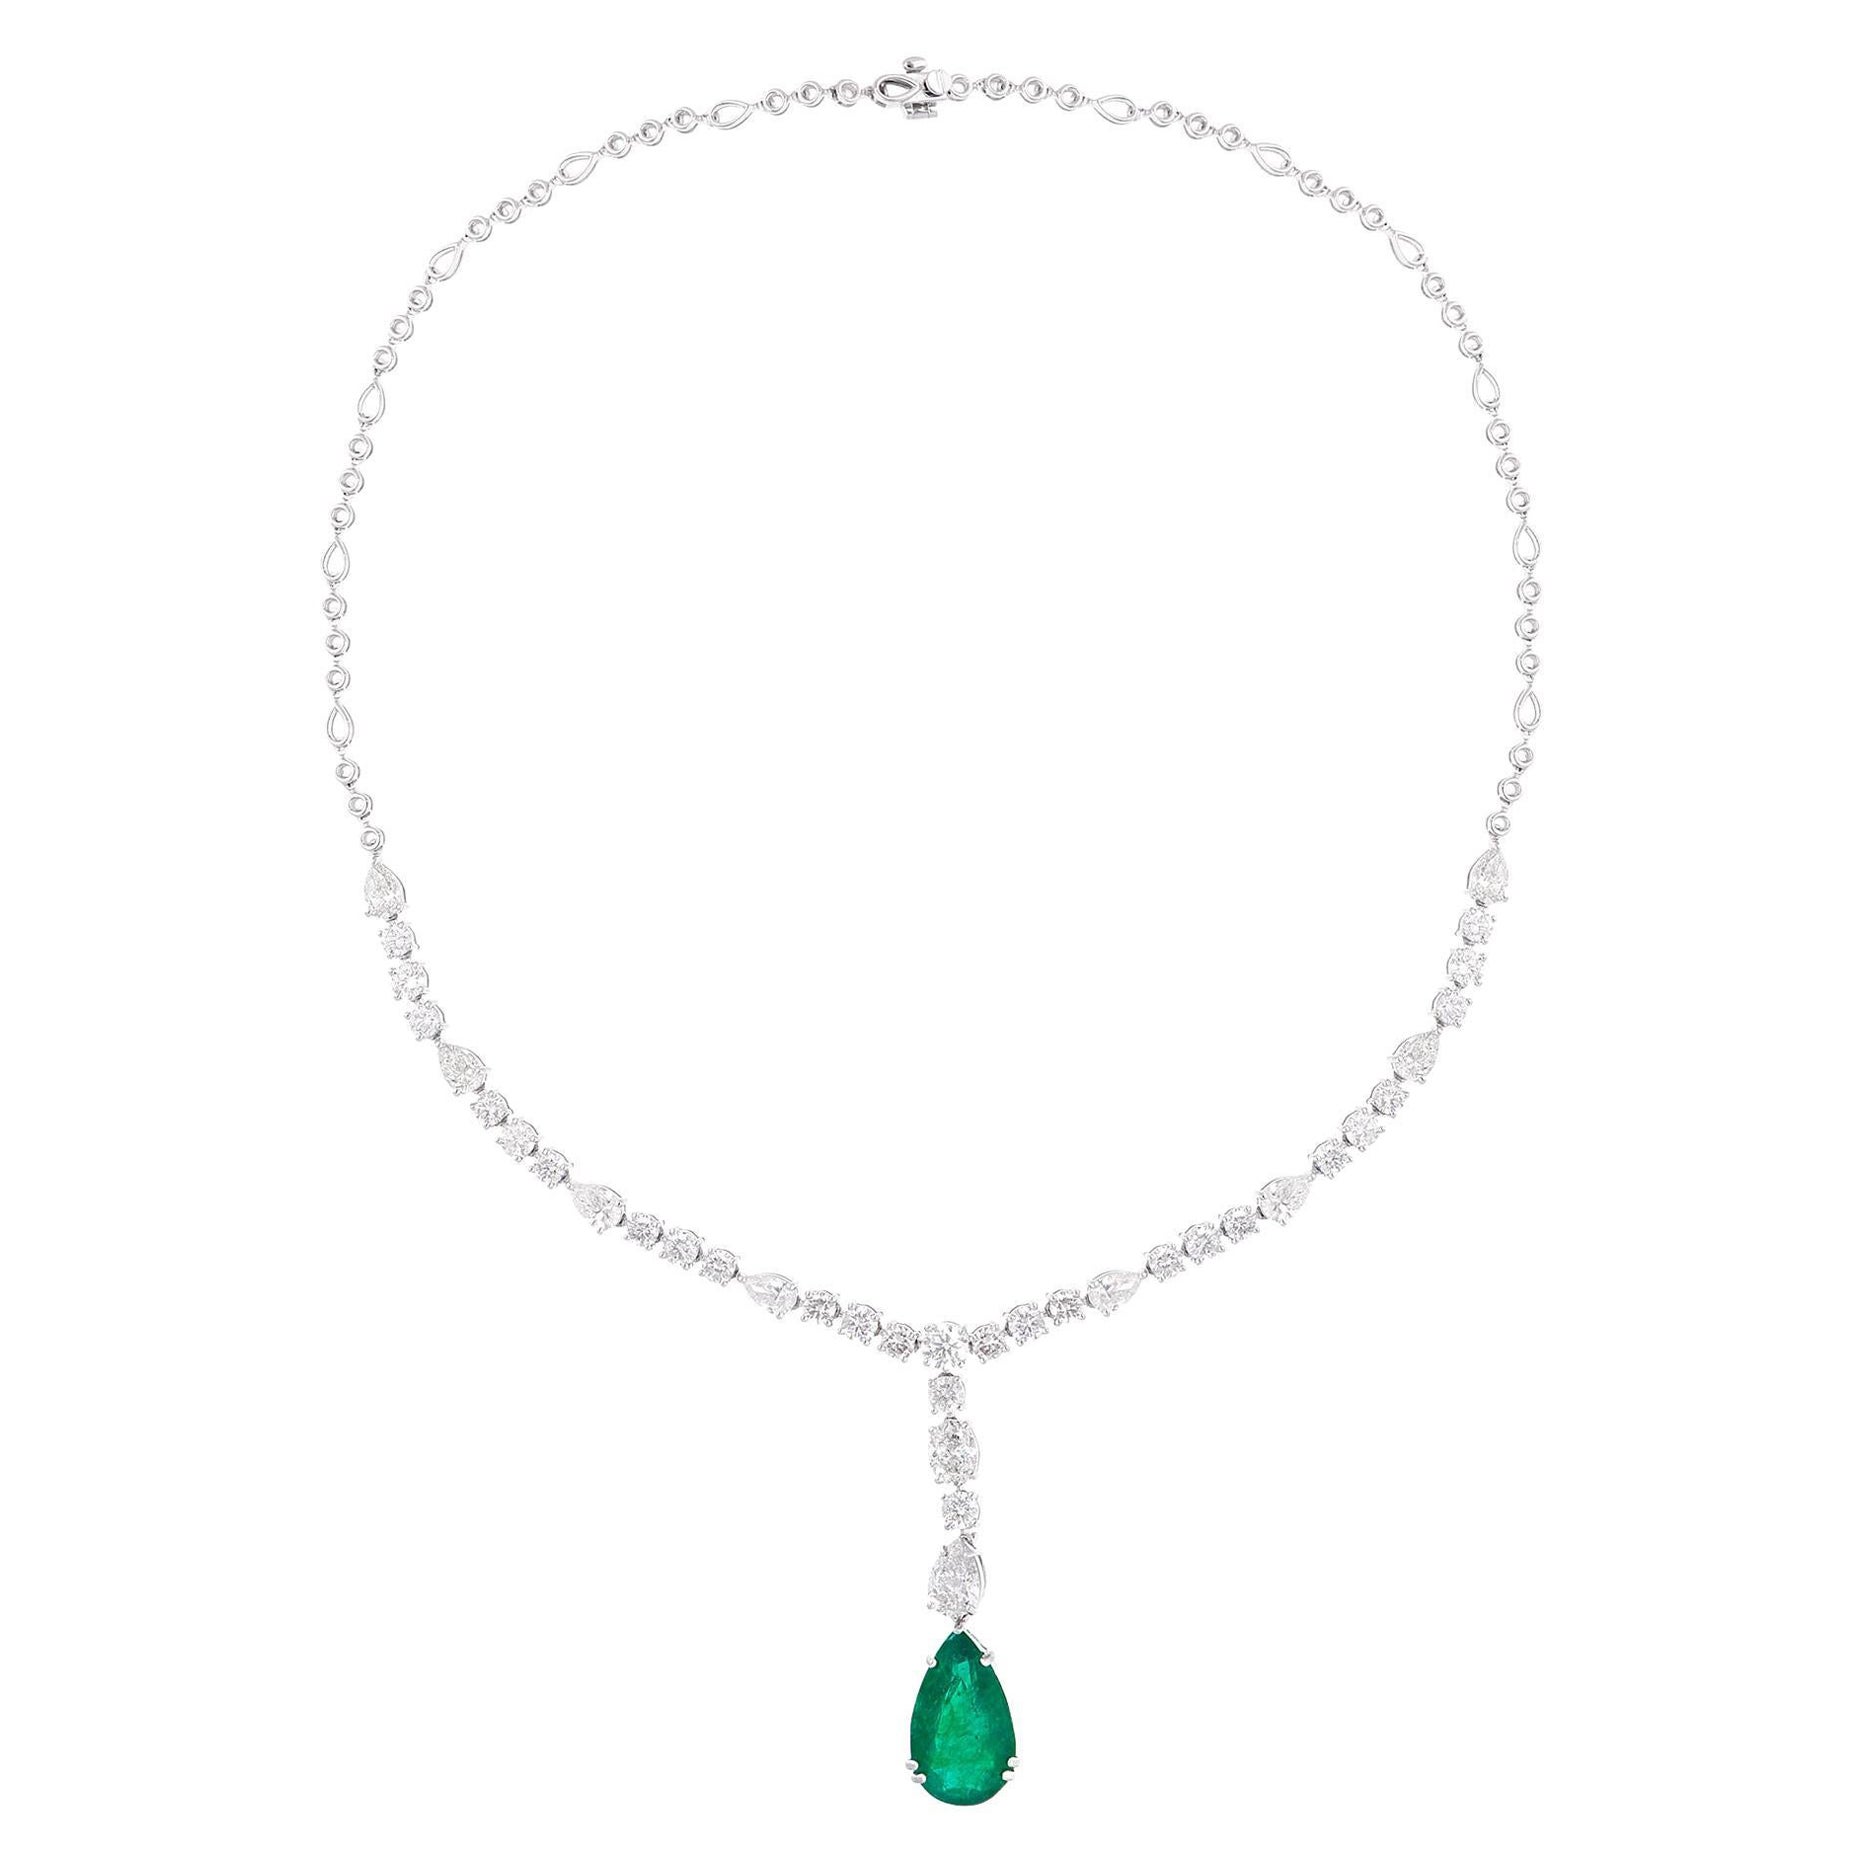 Birnenförmige natürliche Smaragd-Edelstein-Halskette Diamant 18 Karat Weißgold Schmuck